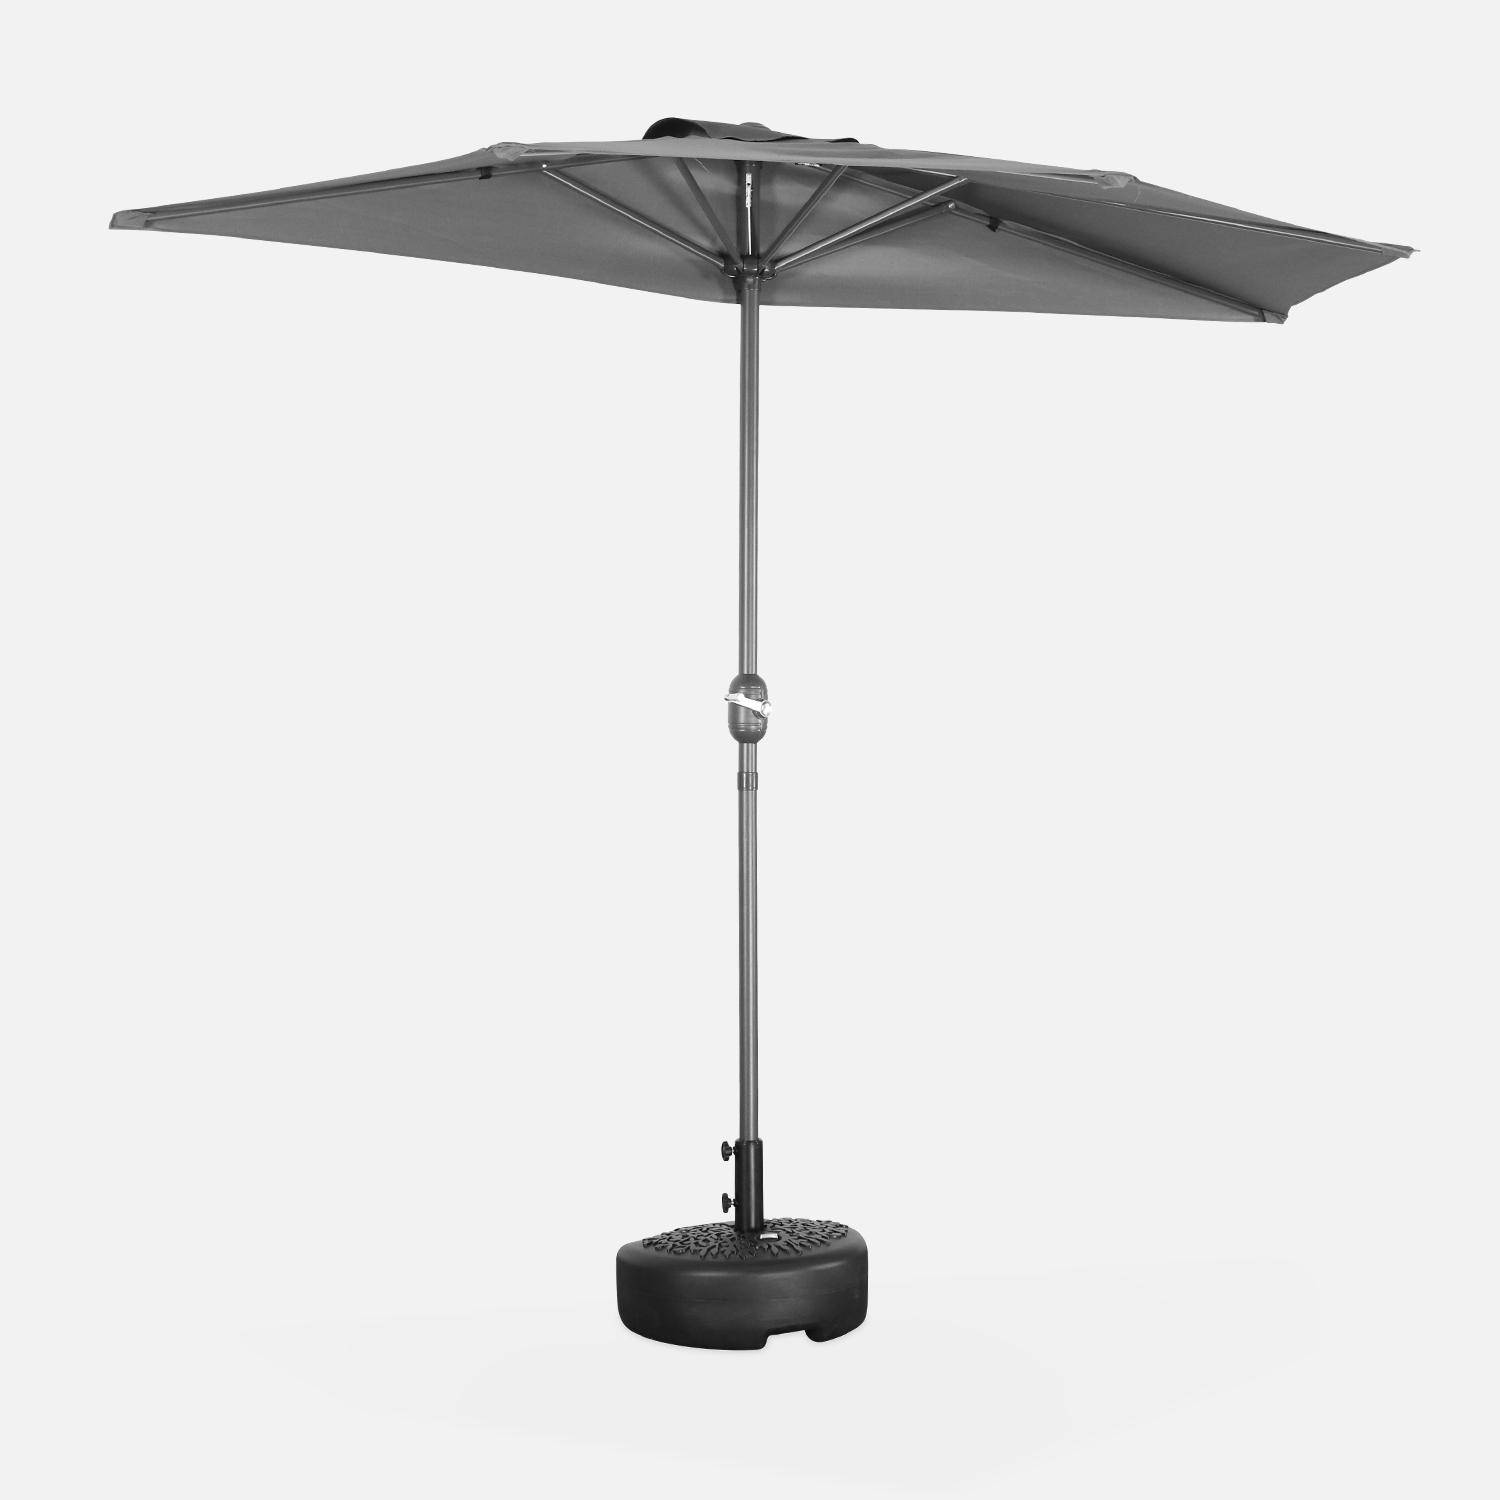  Parasol para balcón Ø250cm - CALVI - Medio parasol recto, mástil de aluminio con manivela, tejido gris Photo2